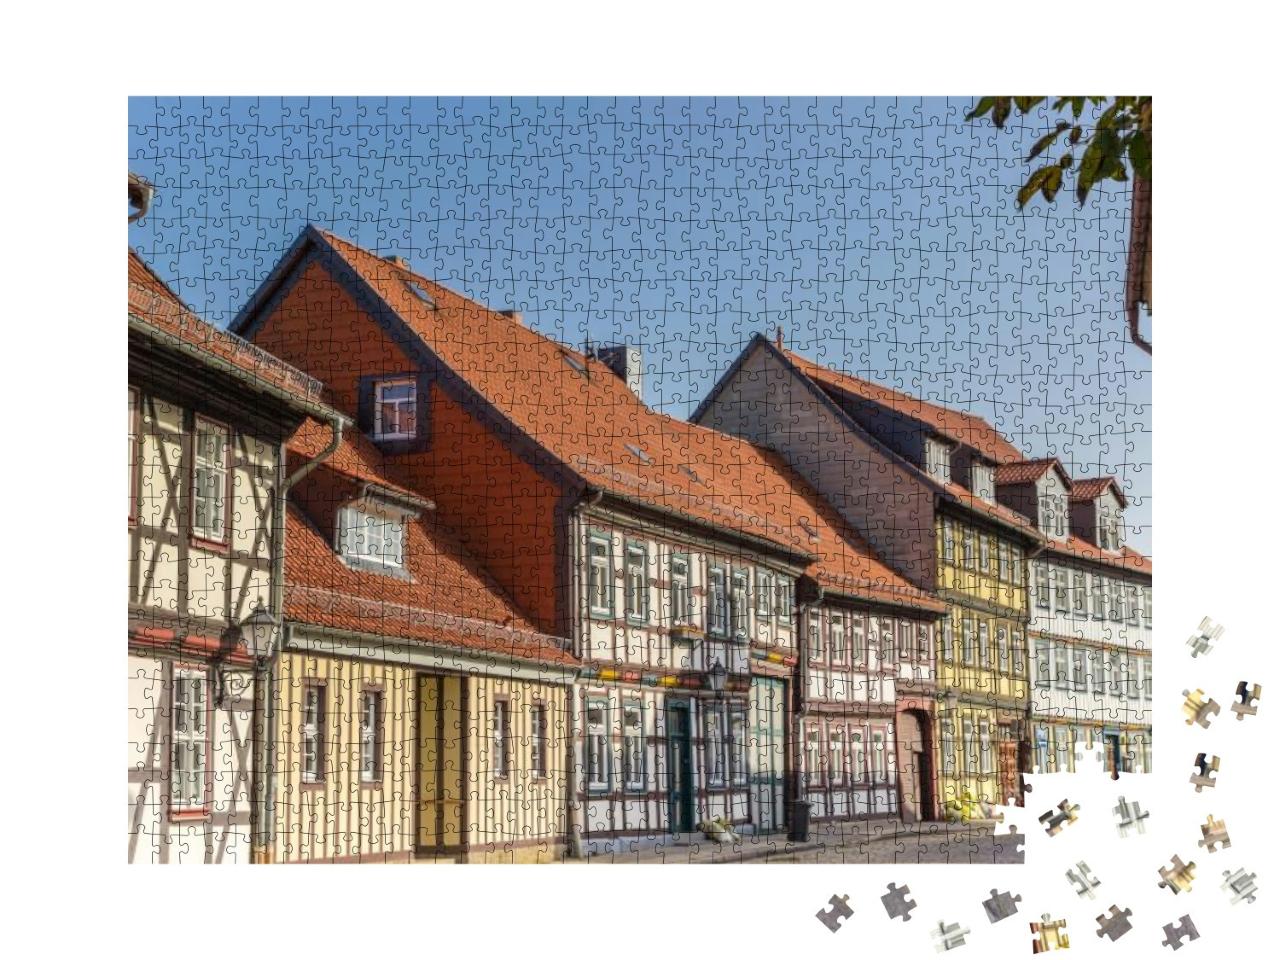 Puzzle 1000 Teile „Fachwerkhäuser in Wernigerode, Deutschland“